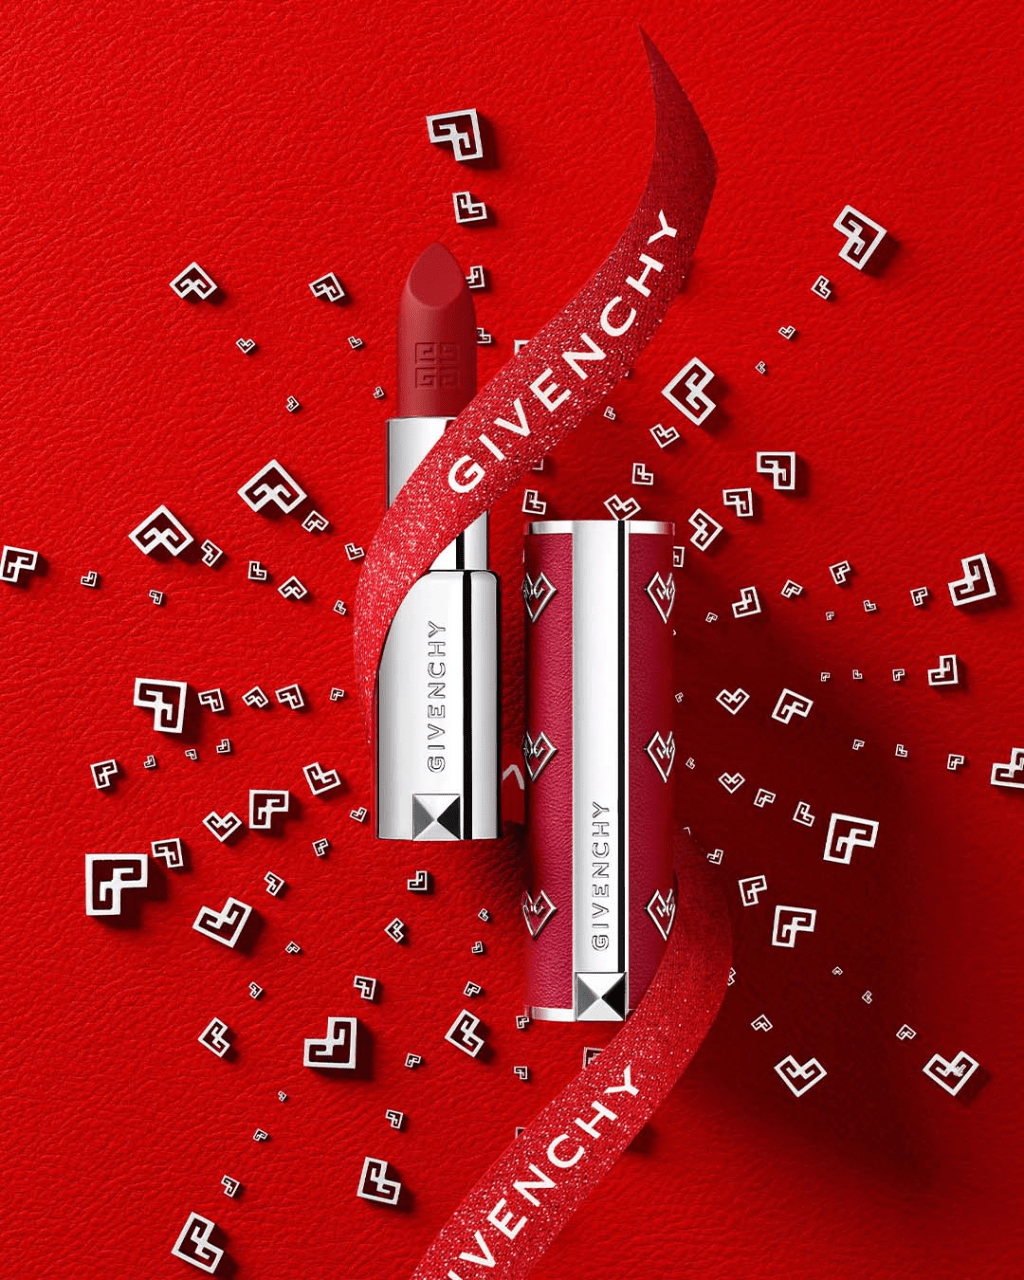 Givenchy新春限量版彩妝為王牌的華麗魅彩紅絲絨唇膏/$320，以及高級訂製稜鏡四色蜜粉/$510，換上以「幸運愛心鎖」為主題的紅色新包裝，當中以兩個G組成心形圖案，打造象徵充滿愛的幸運符。